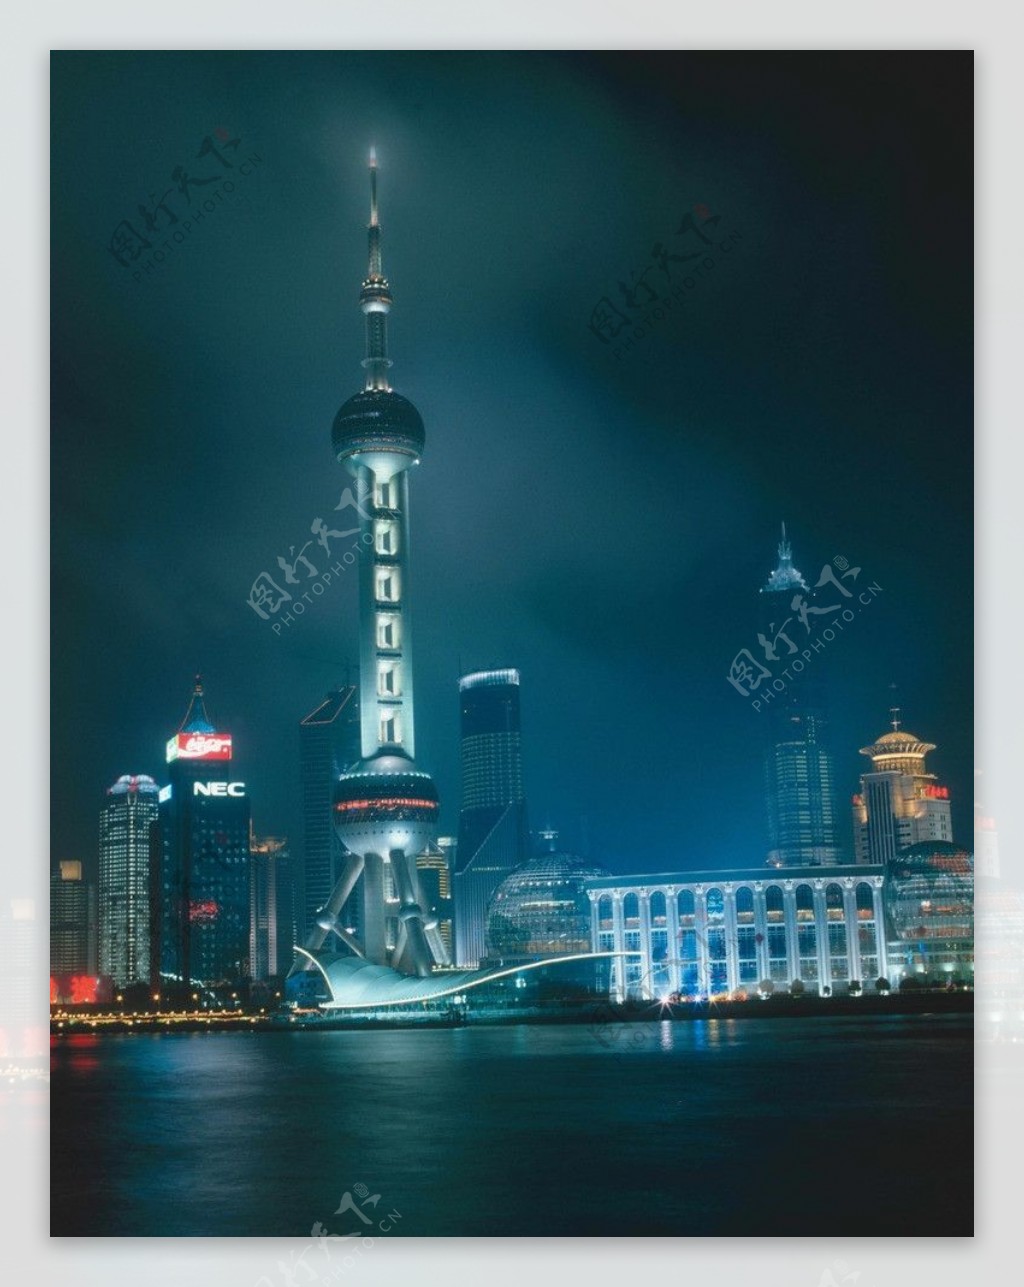 上海明珠电视塔夜图片